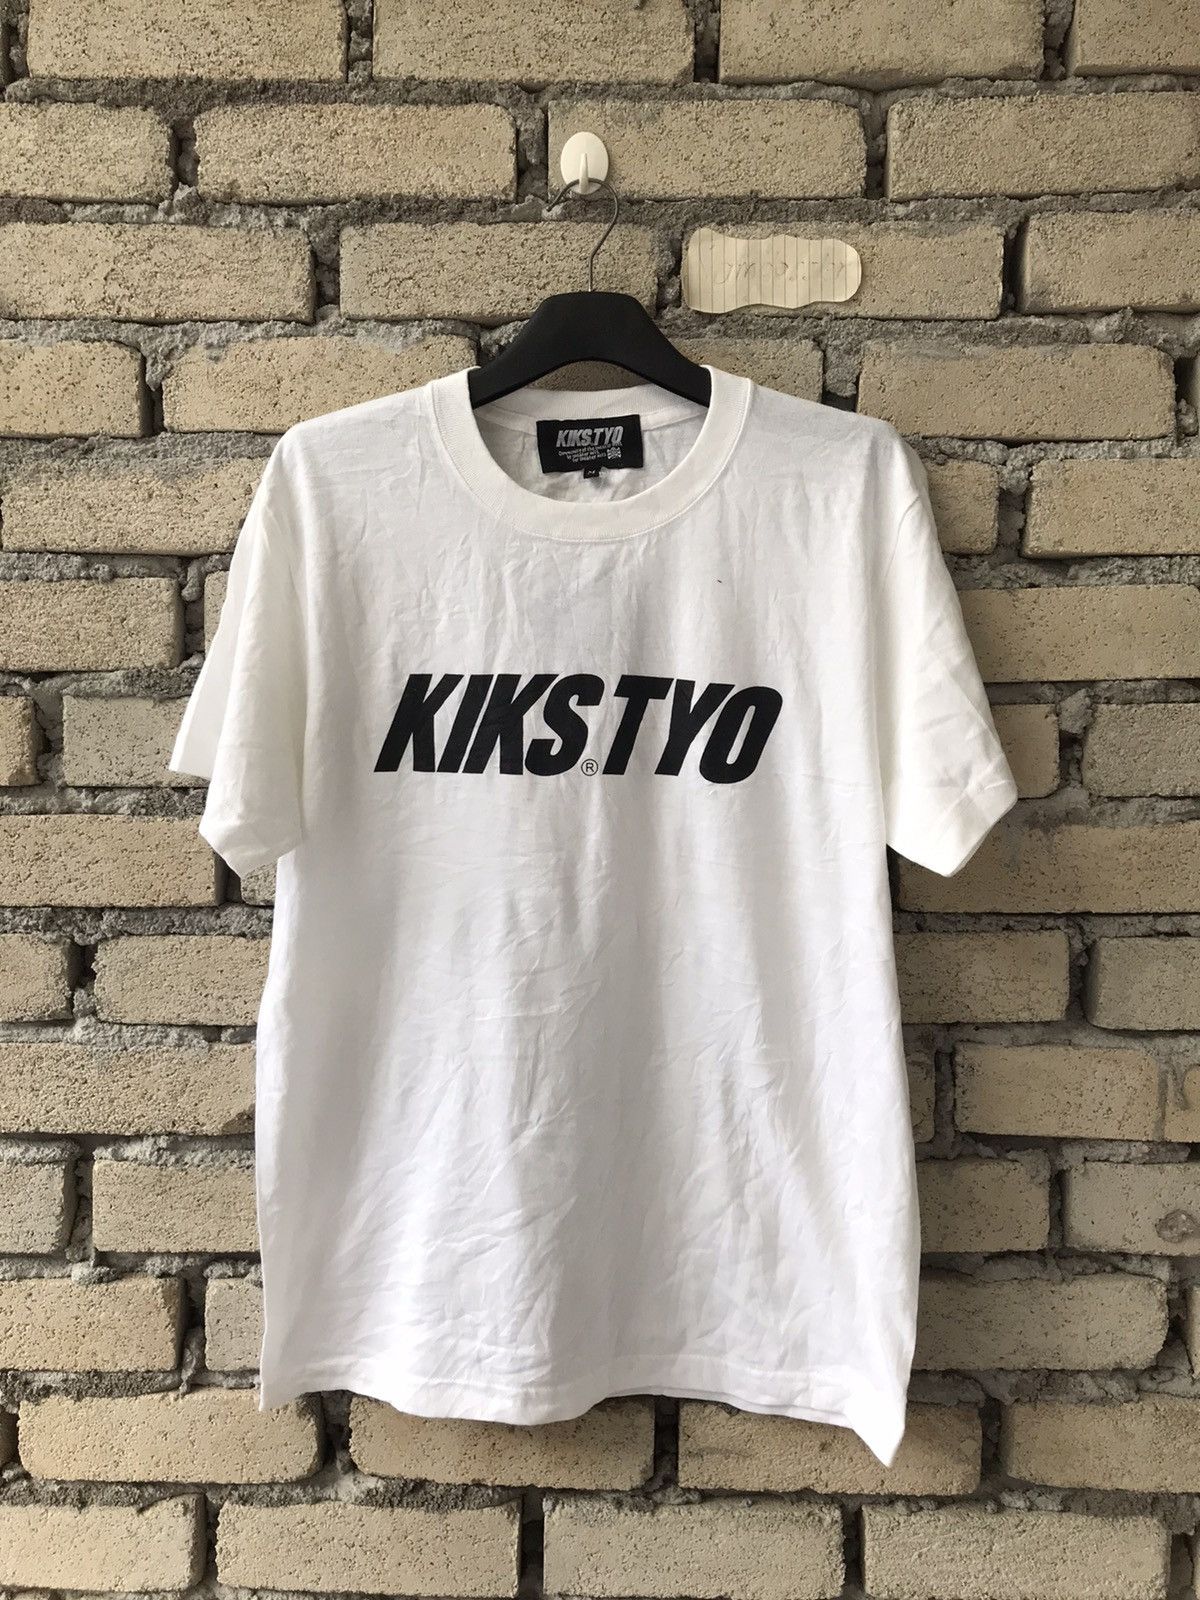 Kiks Tyo KIKS TYO Japanese Brand Spell Out Streetwear Shinichi Izaki Size US M / EU 48-50 / 2 - 1 Preview